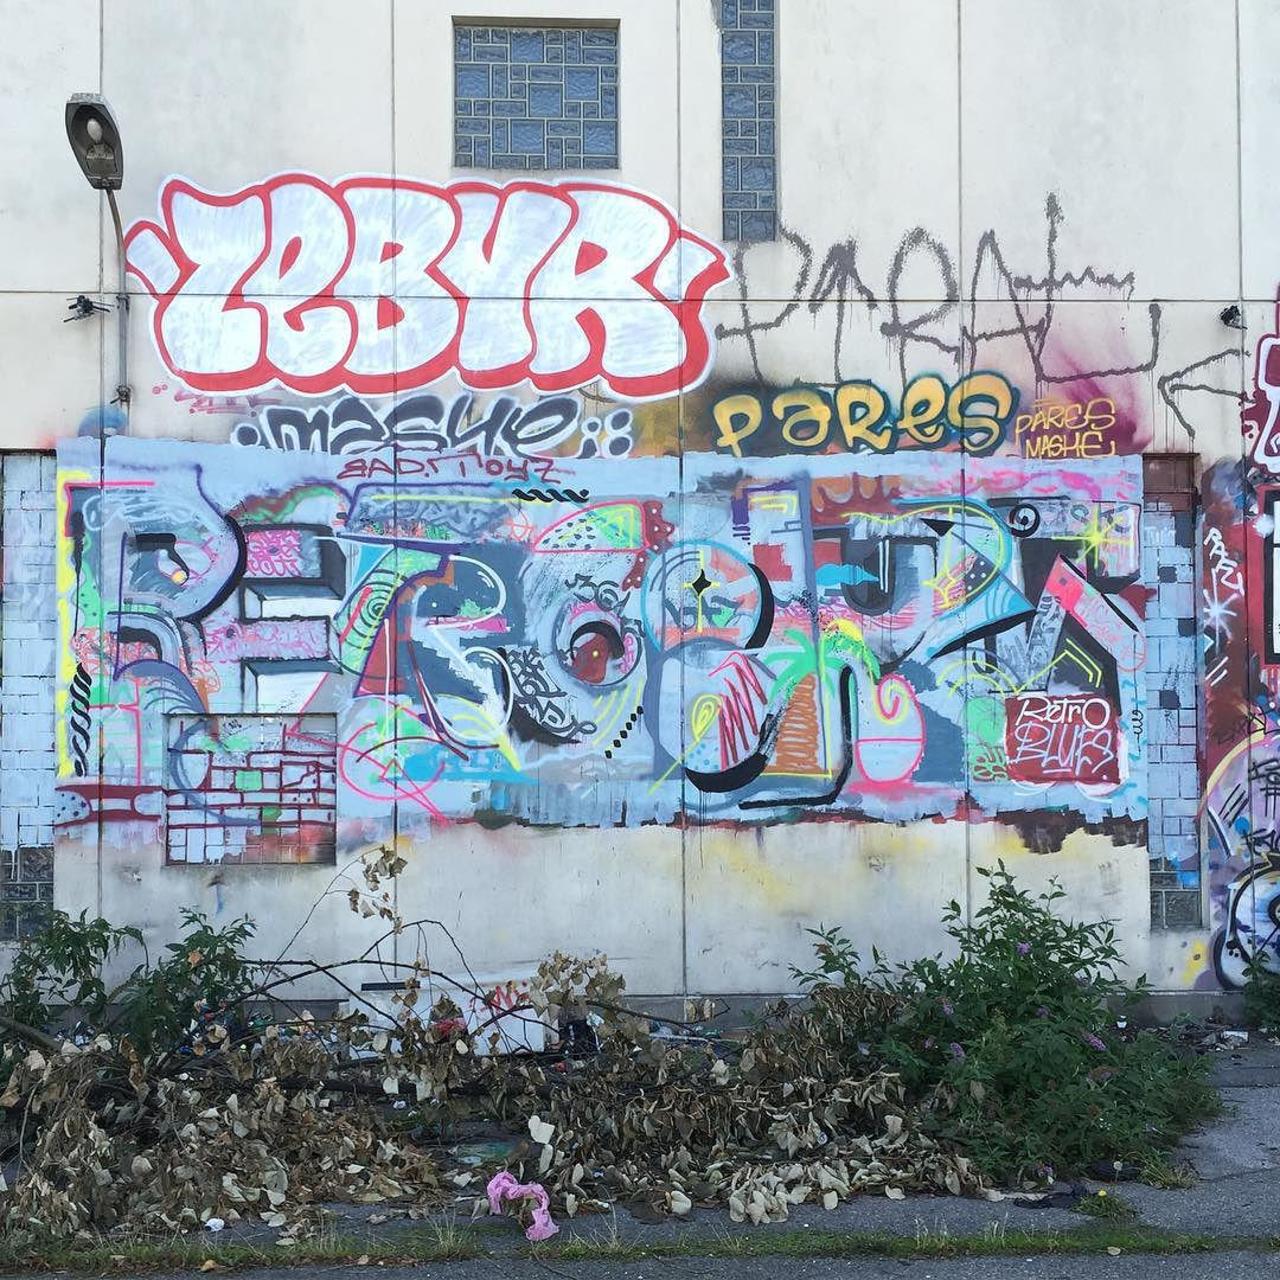 #Paris #graffiti photo by @ijustdontknow http://ift.tt/1KBhPMX #StreetArt http://t.co/G2tgLRnKyj